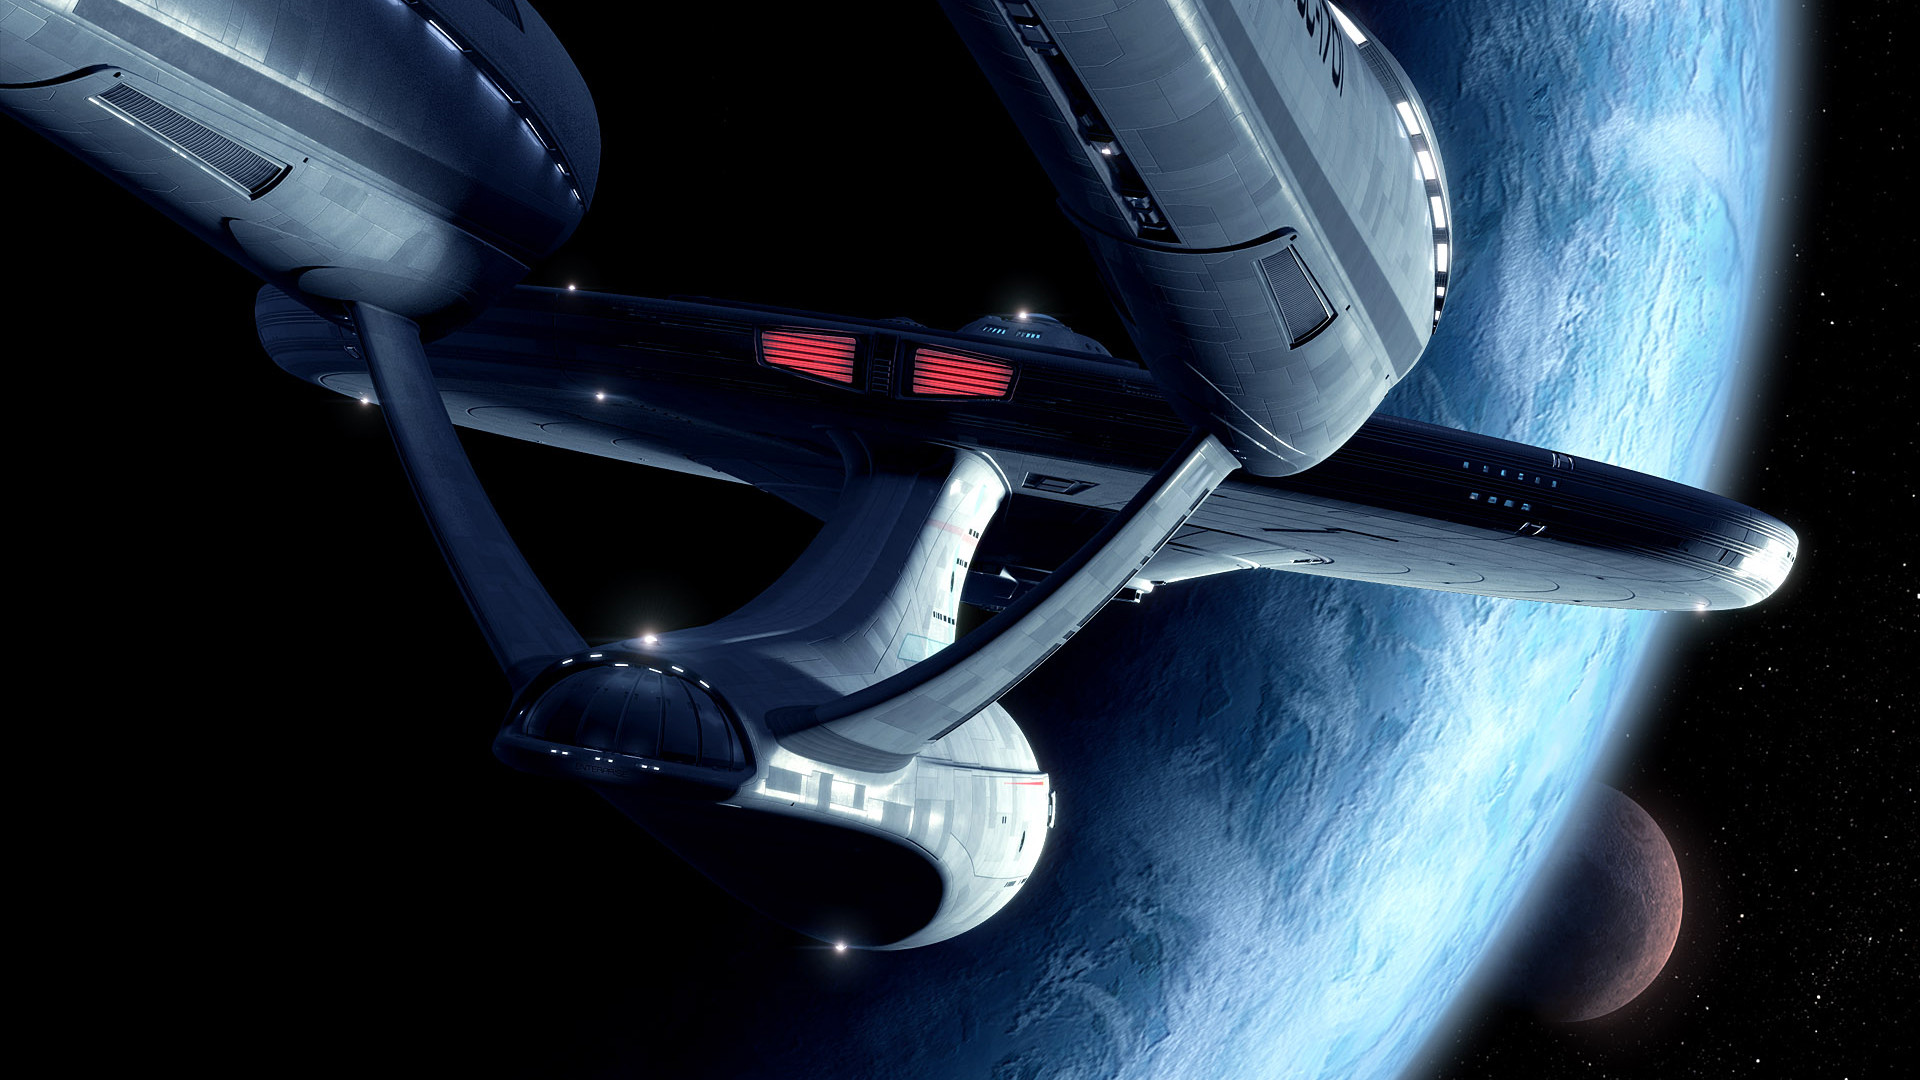 Sci Fi – Star Trek Star Trek Star Wars Wallpaper